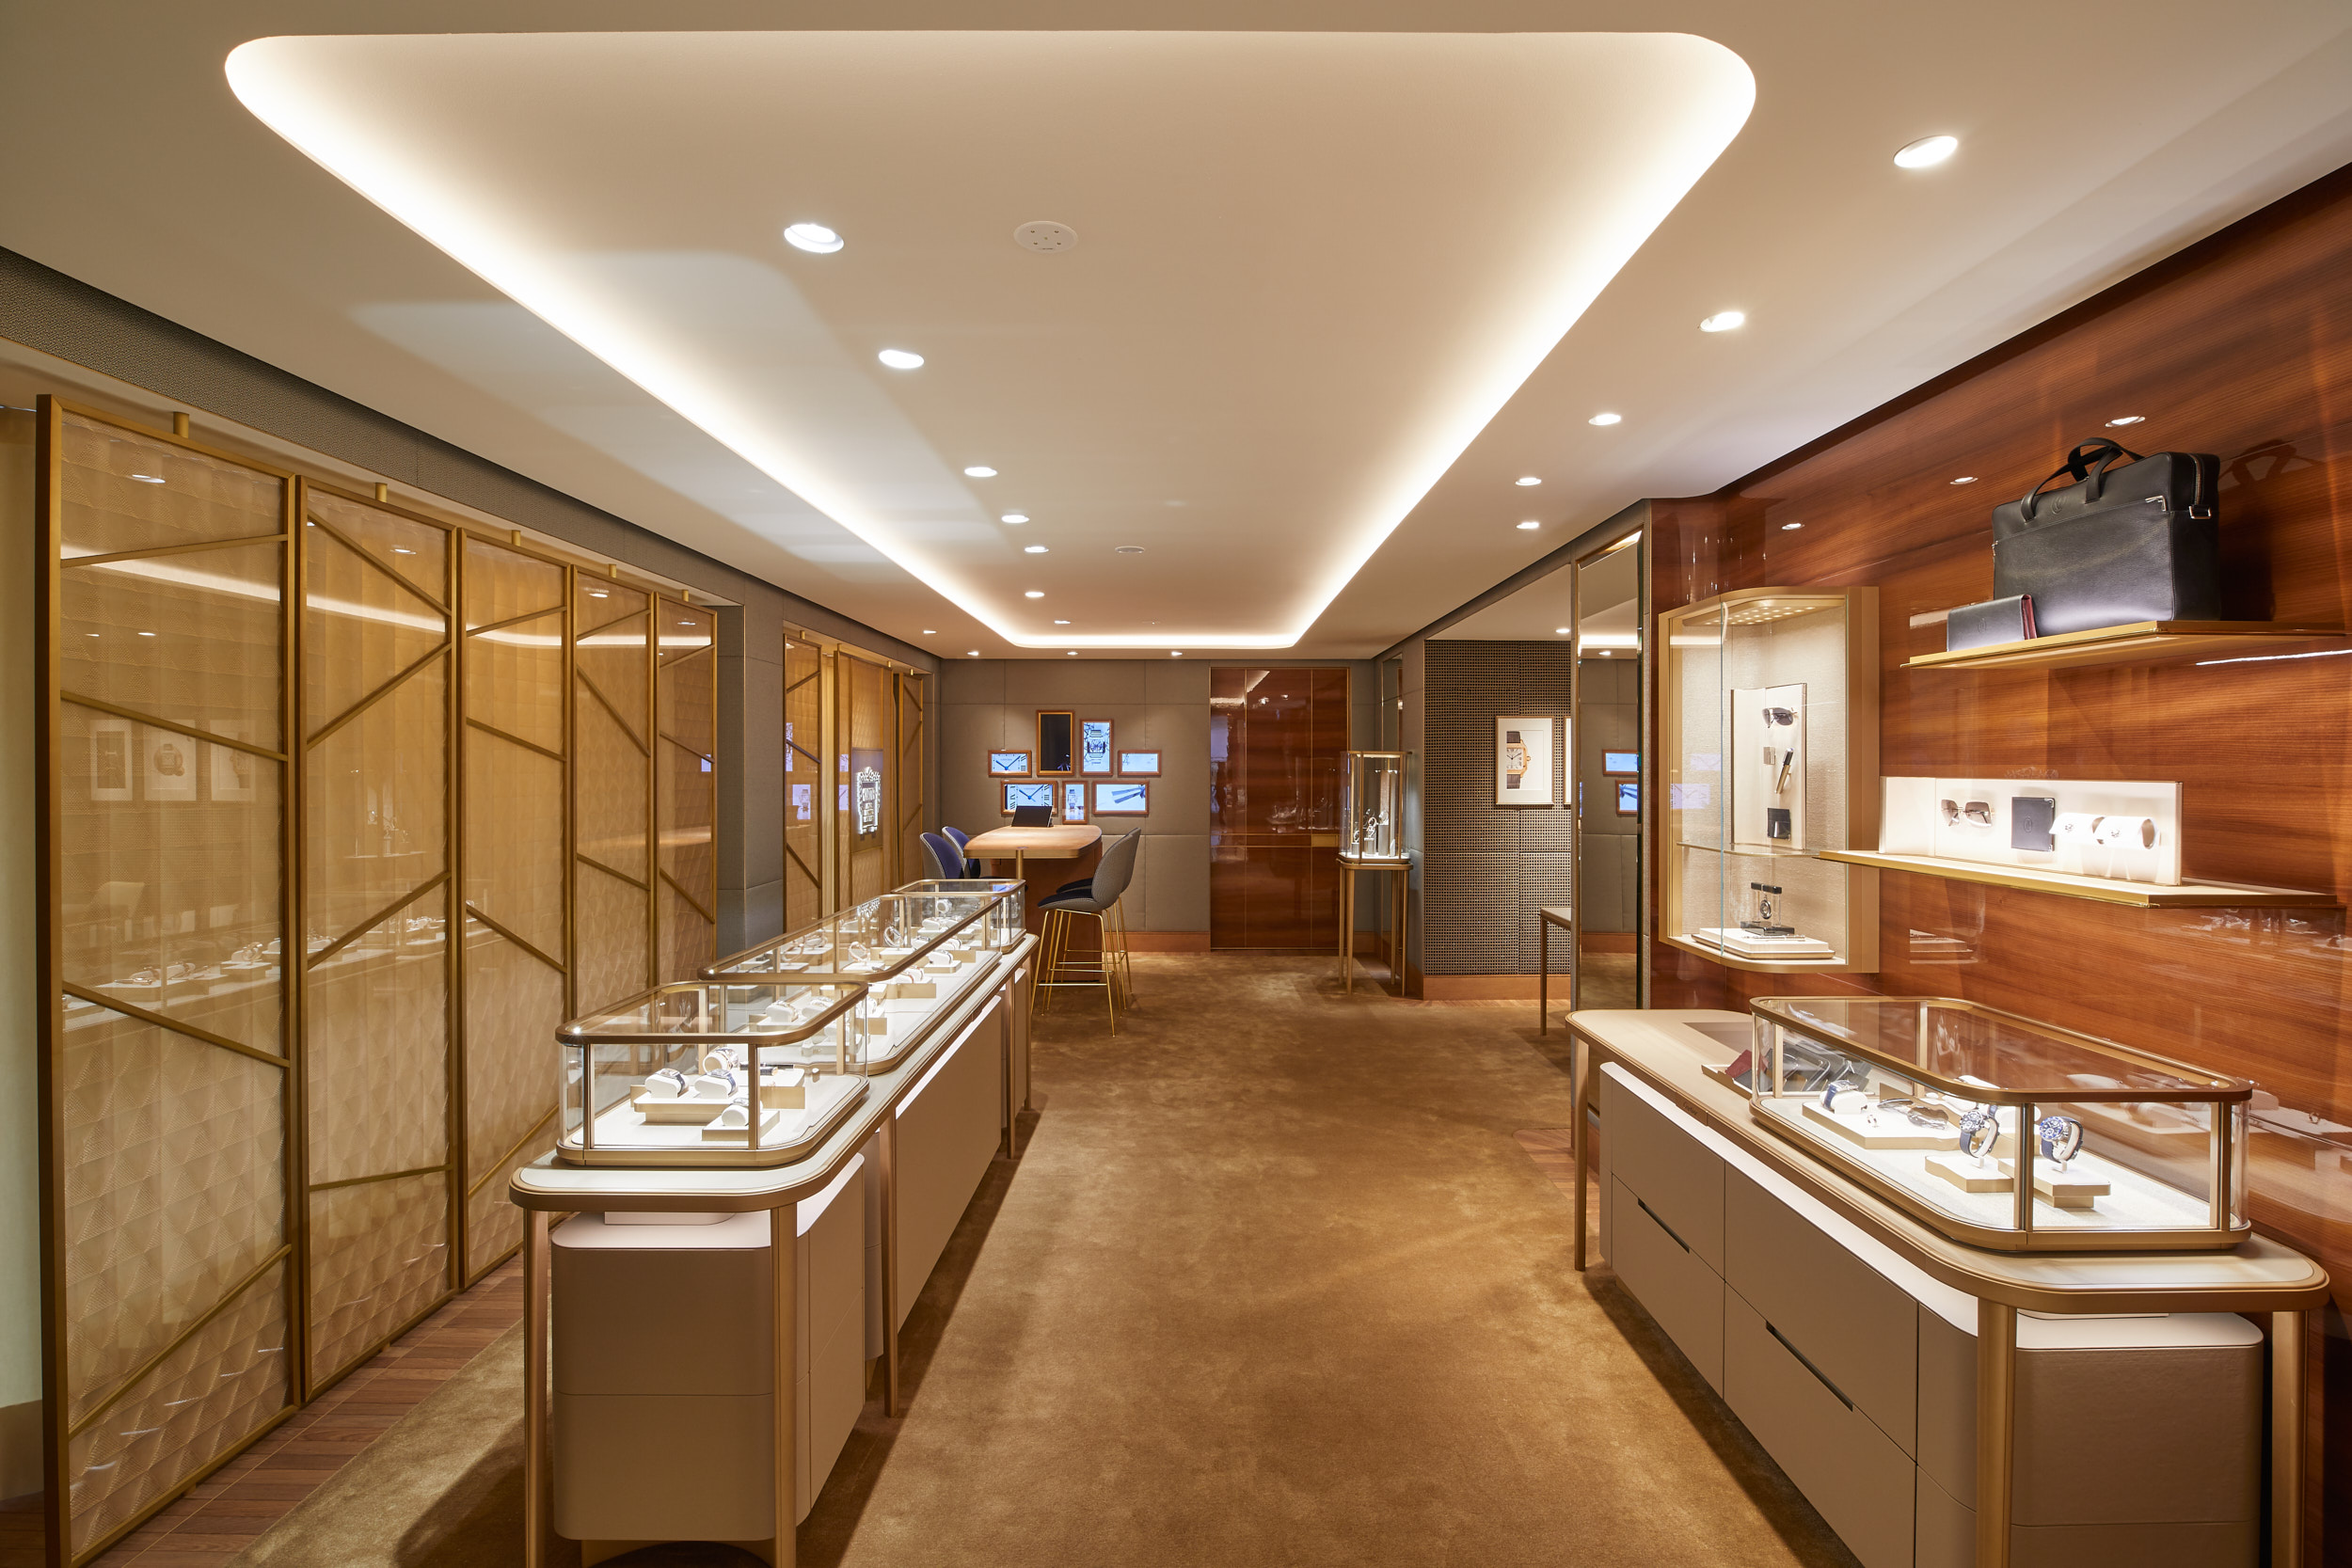 Cartier re-opens its Munich Boutique 